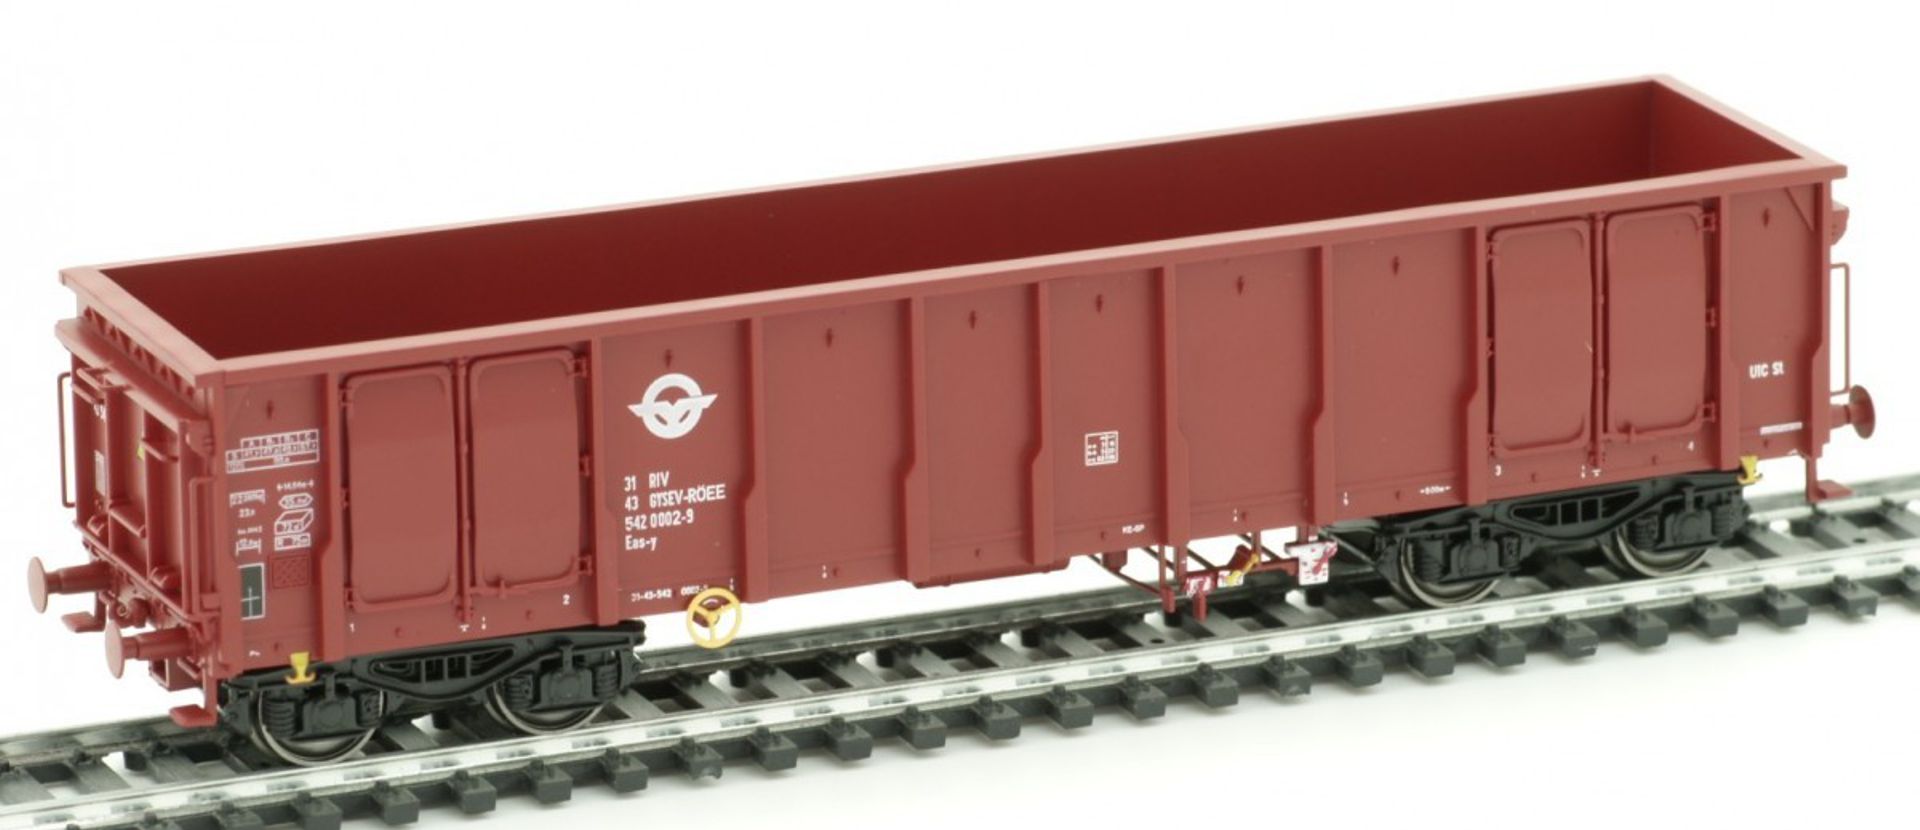 Albert Modell 542002 - Offener Güterwagen Eacs, RO-AMG, Ep.VI